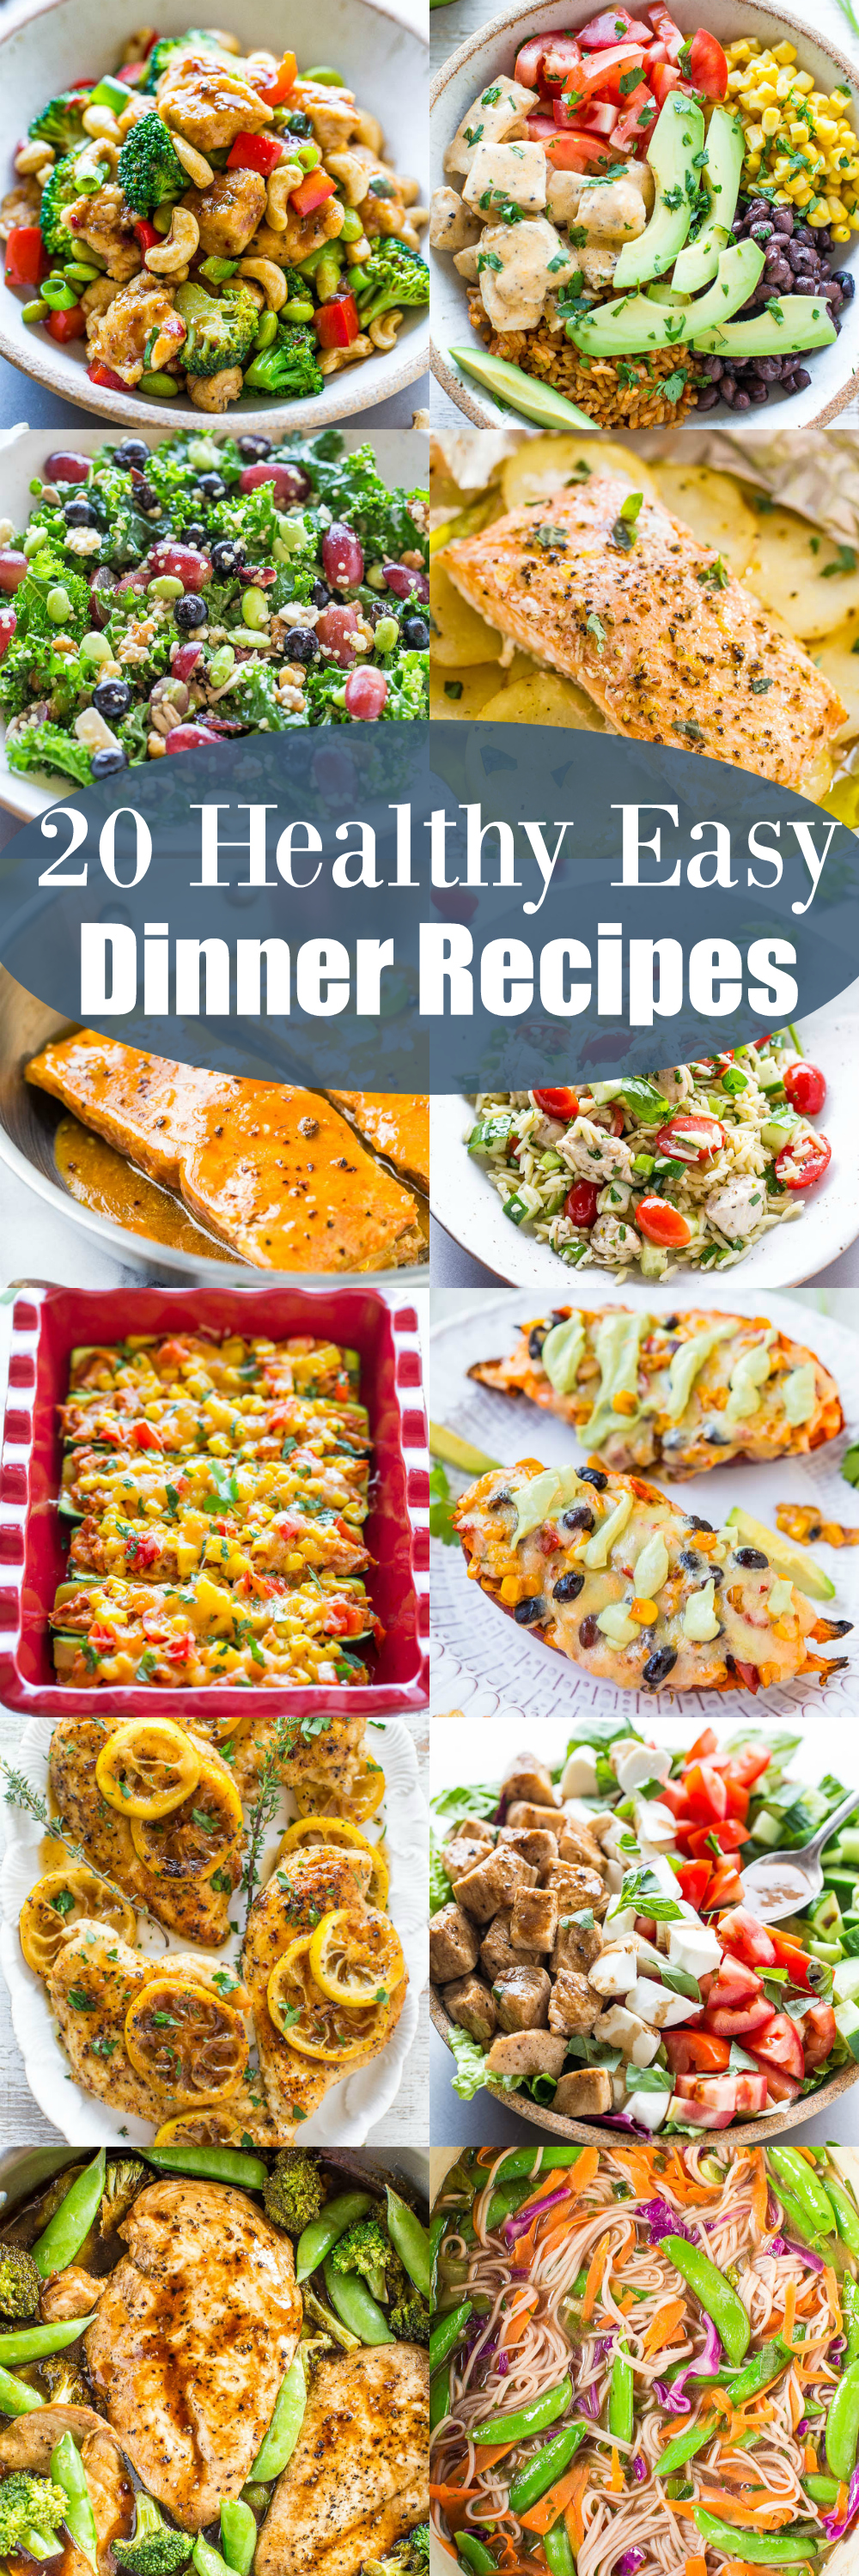 20 Easy Dinner Recipes for Beginners